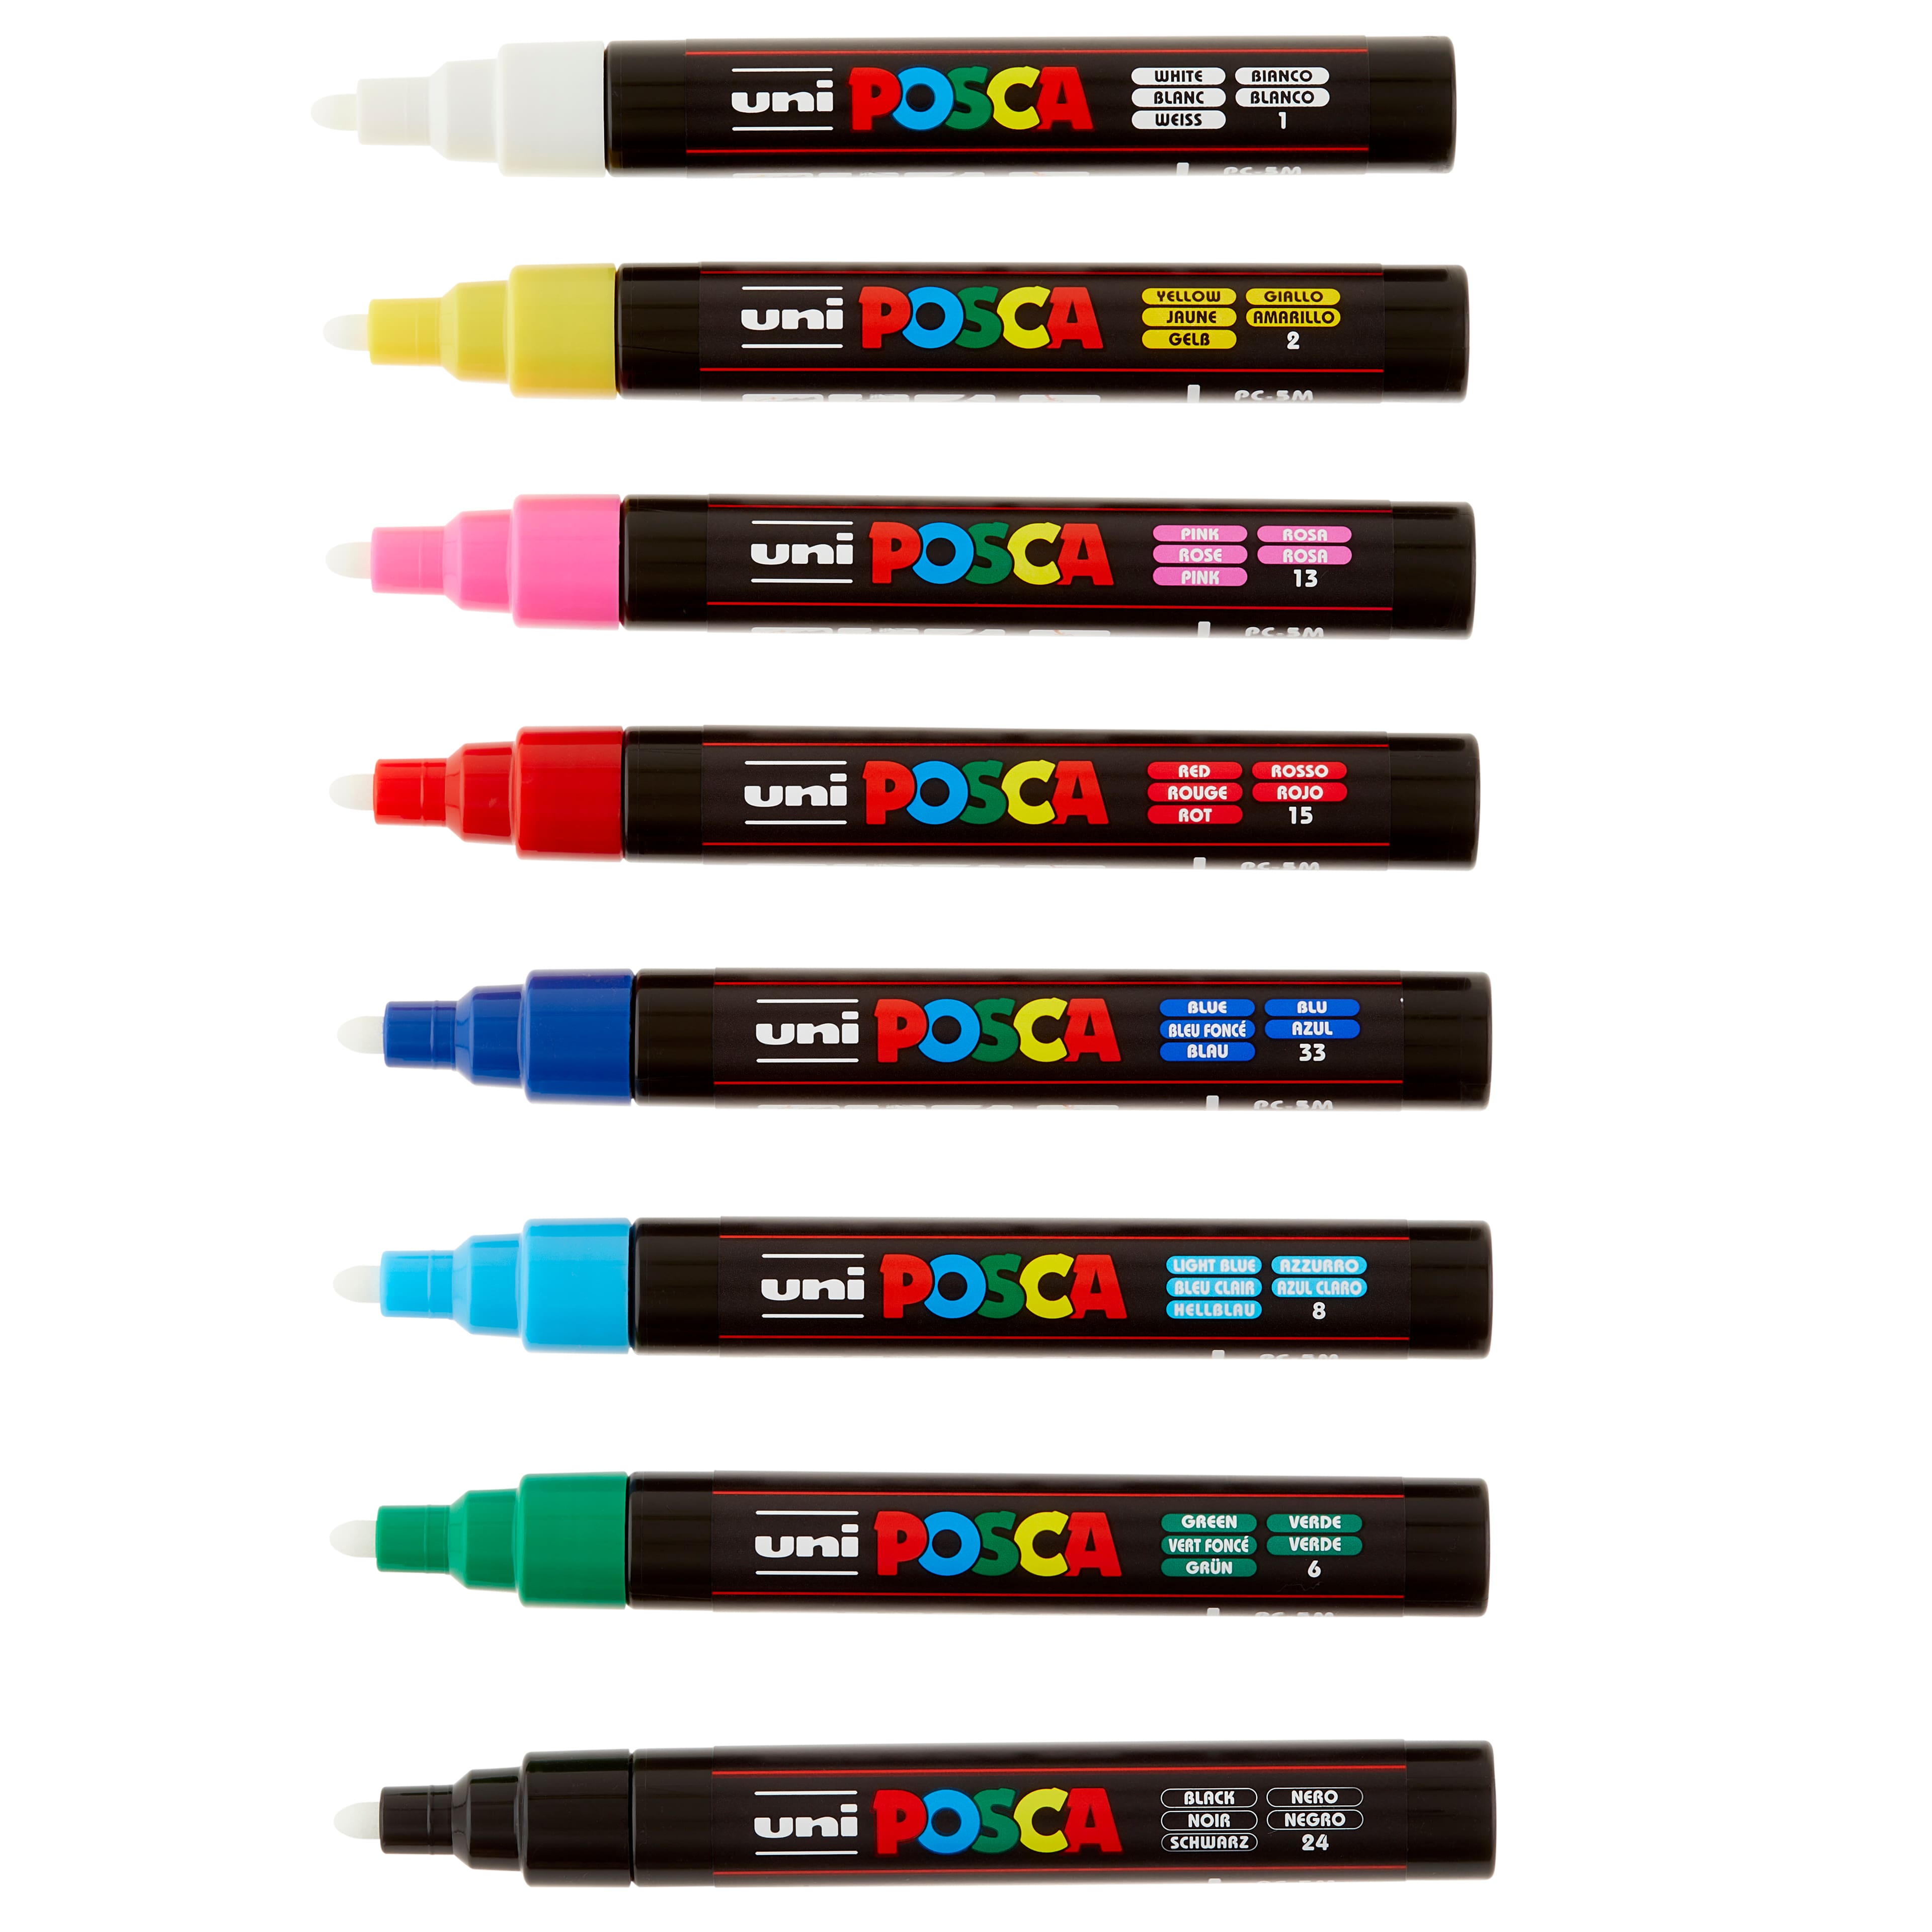 Uni Posca PC-3M 16 Color Fine Tip Paint Marker Set, Michaels